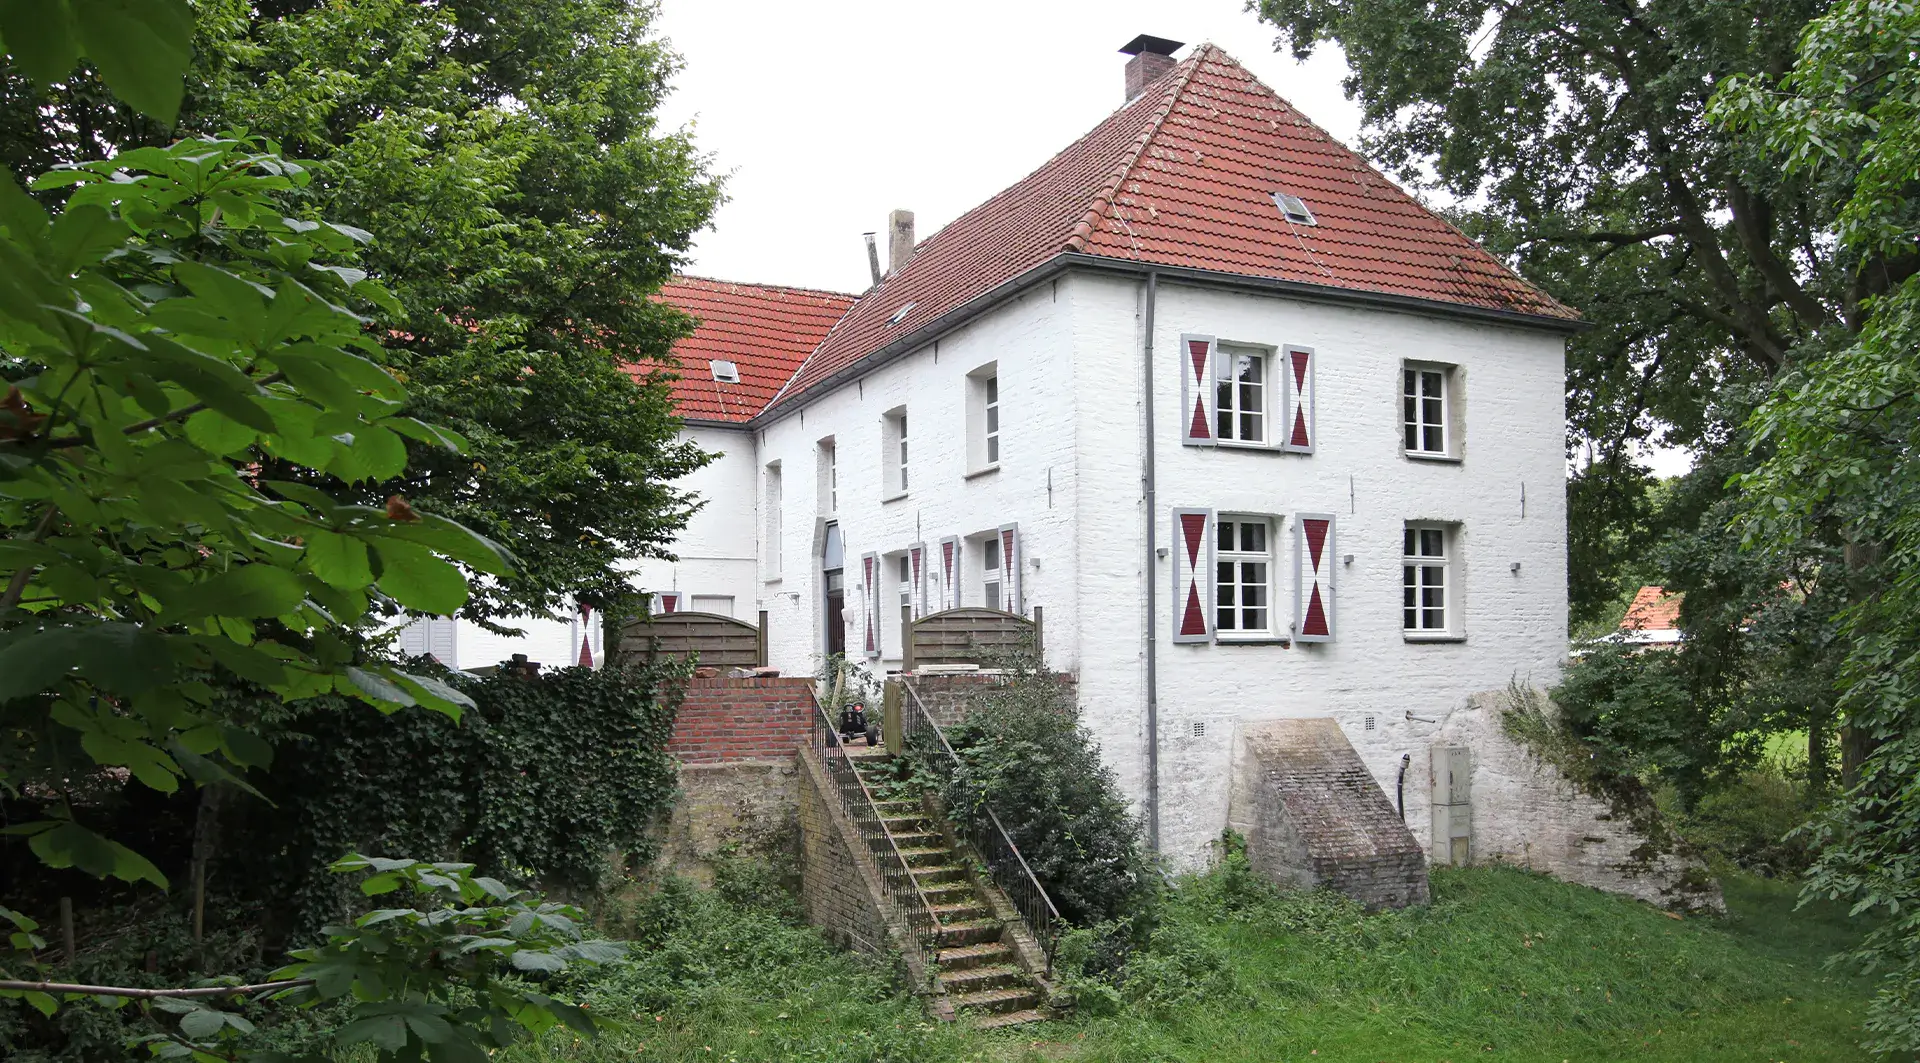 Die ehemalige Wasserburg Haus Götterswick in Voerde. Es diente 100 Jahre als Pfarrhaus der Ev. Kirchengemeinde; heute ist es in Privatbesitz.